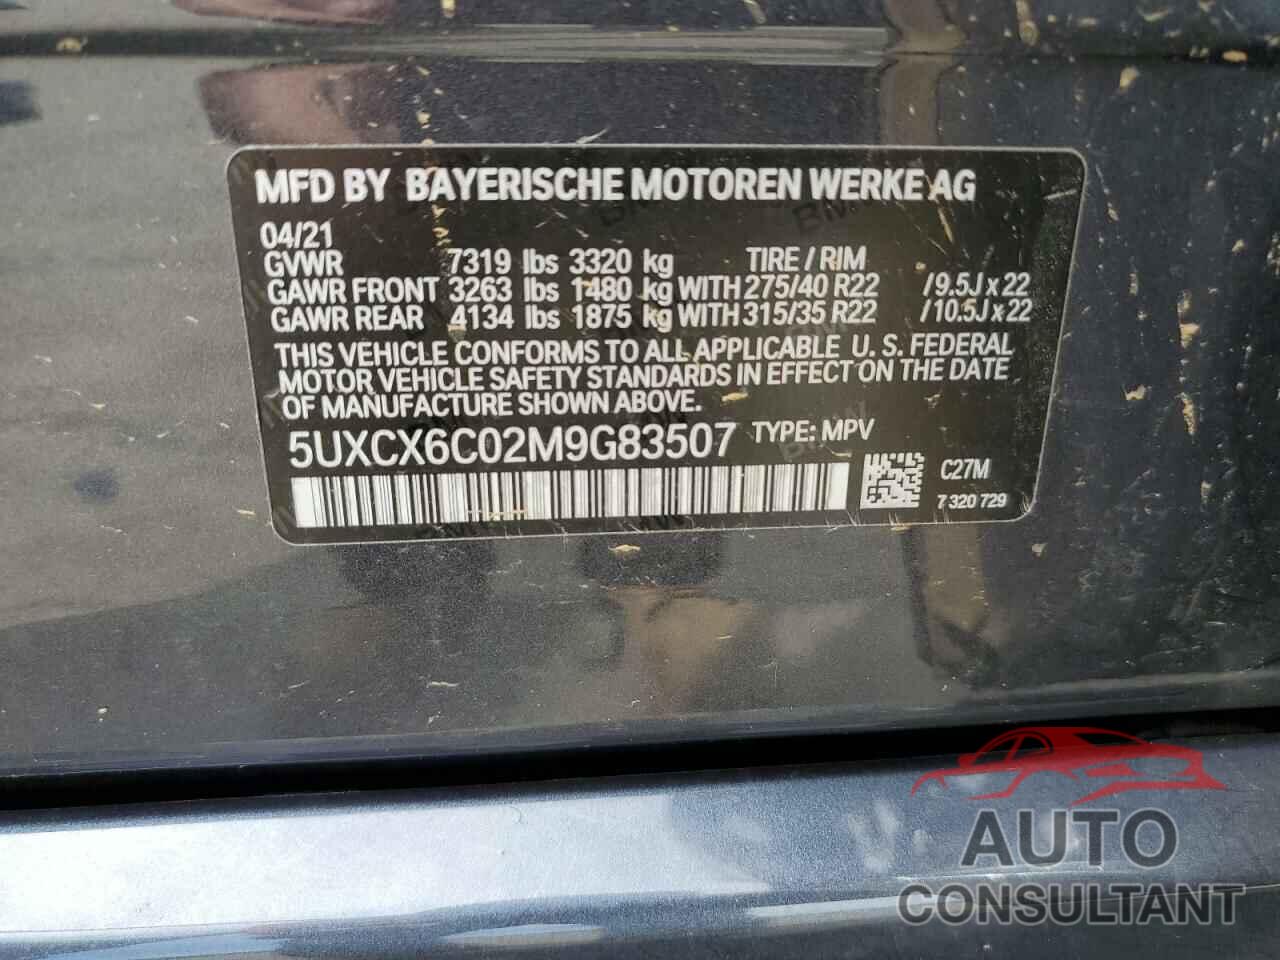 BMW X7 2021 - 5UXCX6C02M9G83507